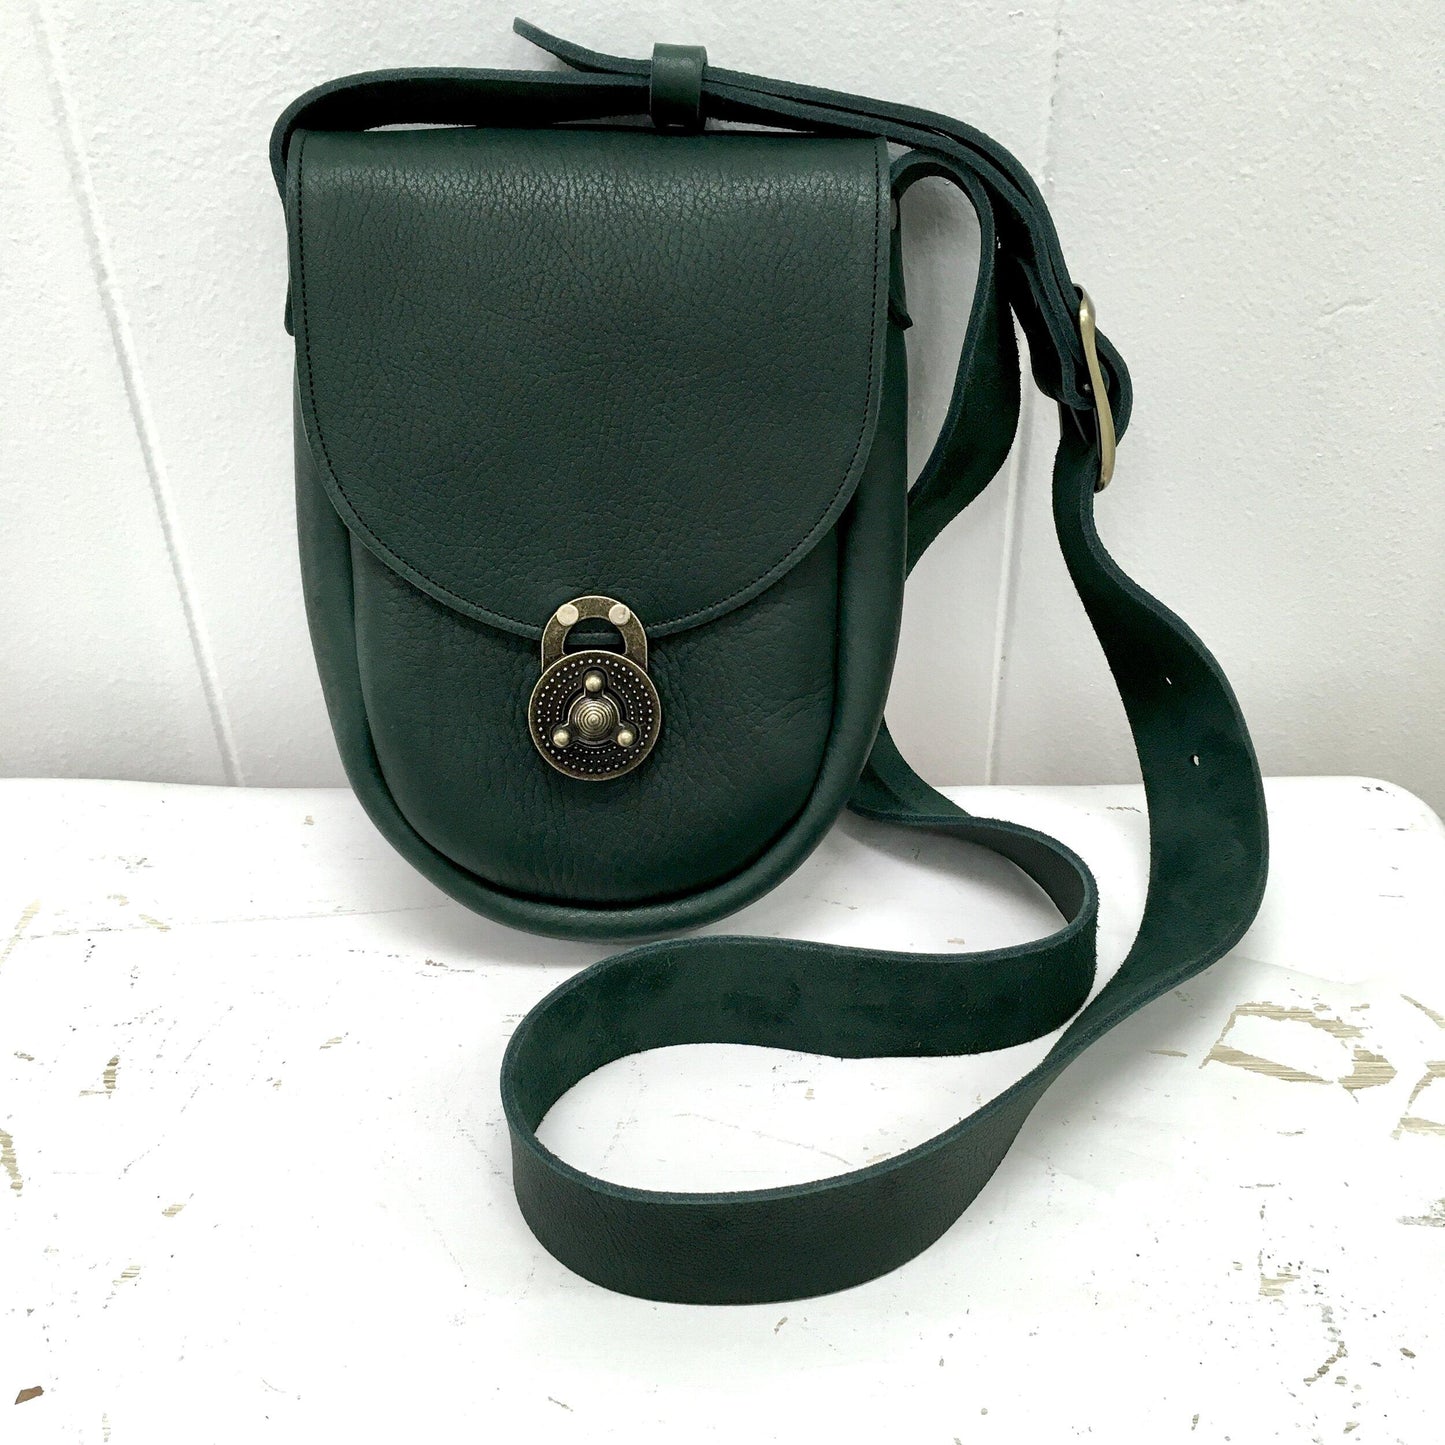 Ginger Crossbody Handbag in Green Bullhide